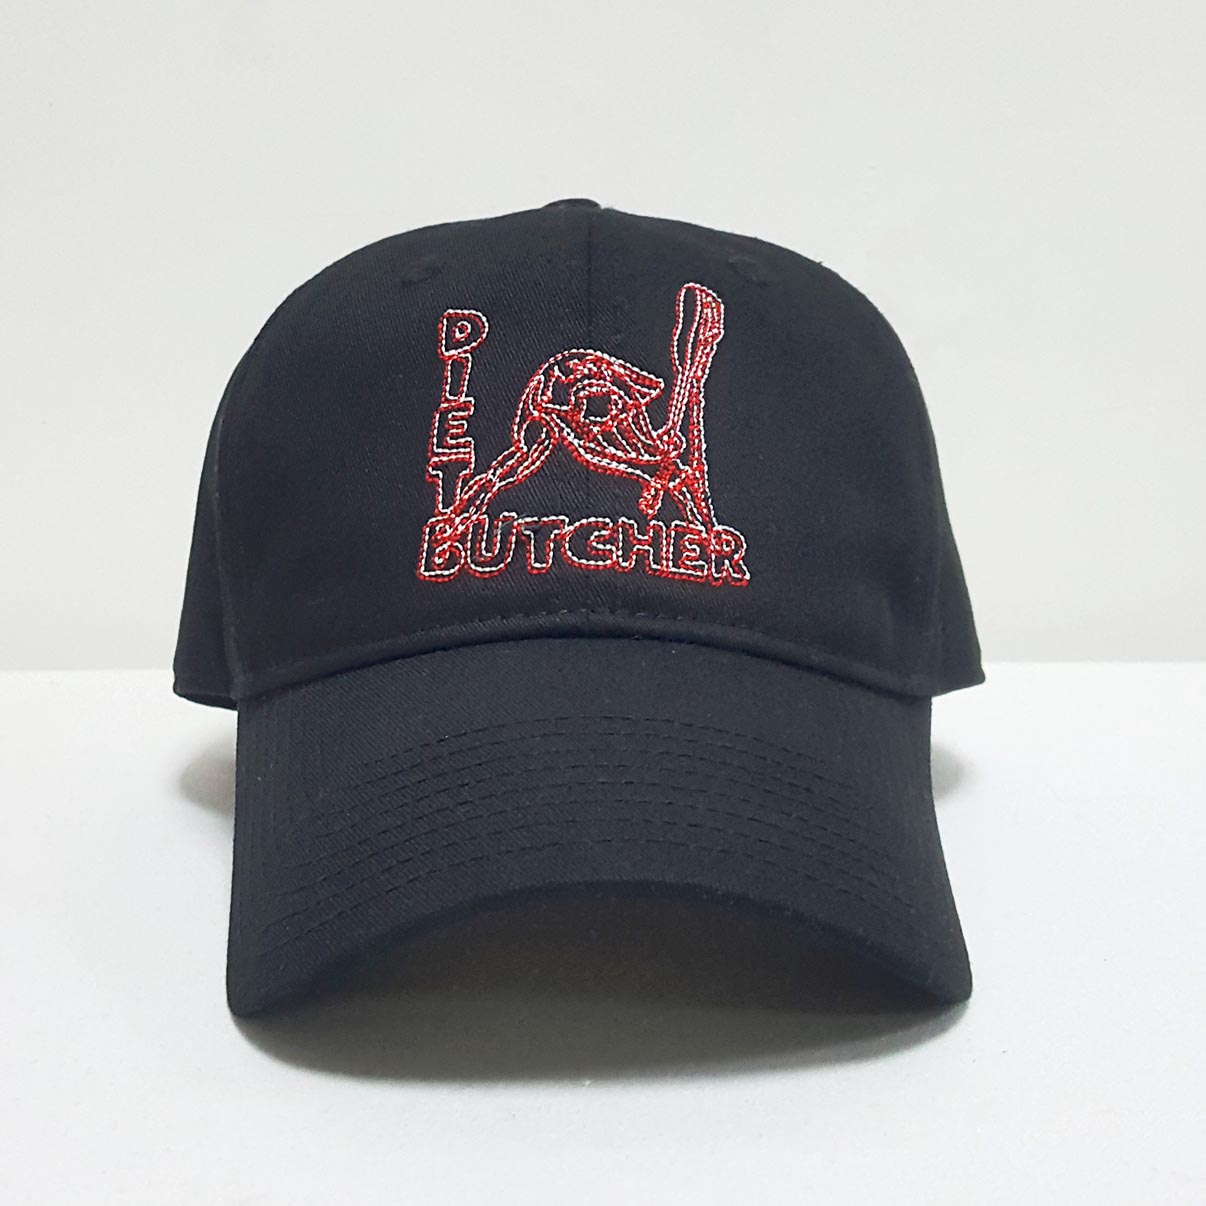 冠达帽业订制棒球帽厂家 韩版时尚斜纹棒球帽 绣花鸭舌帽定做